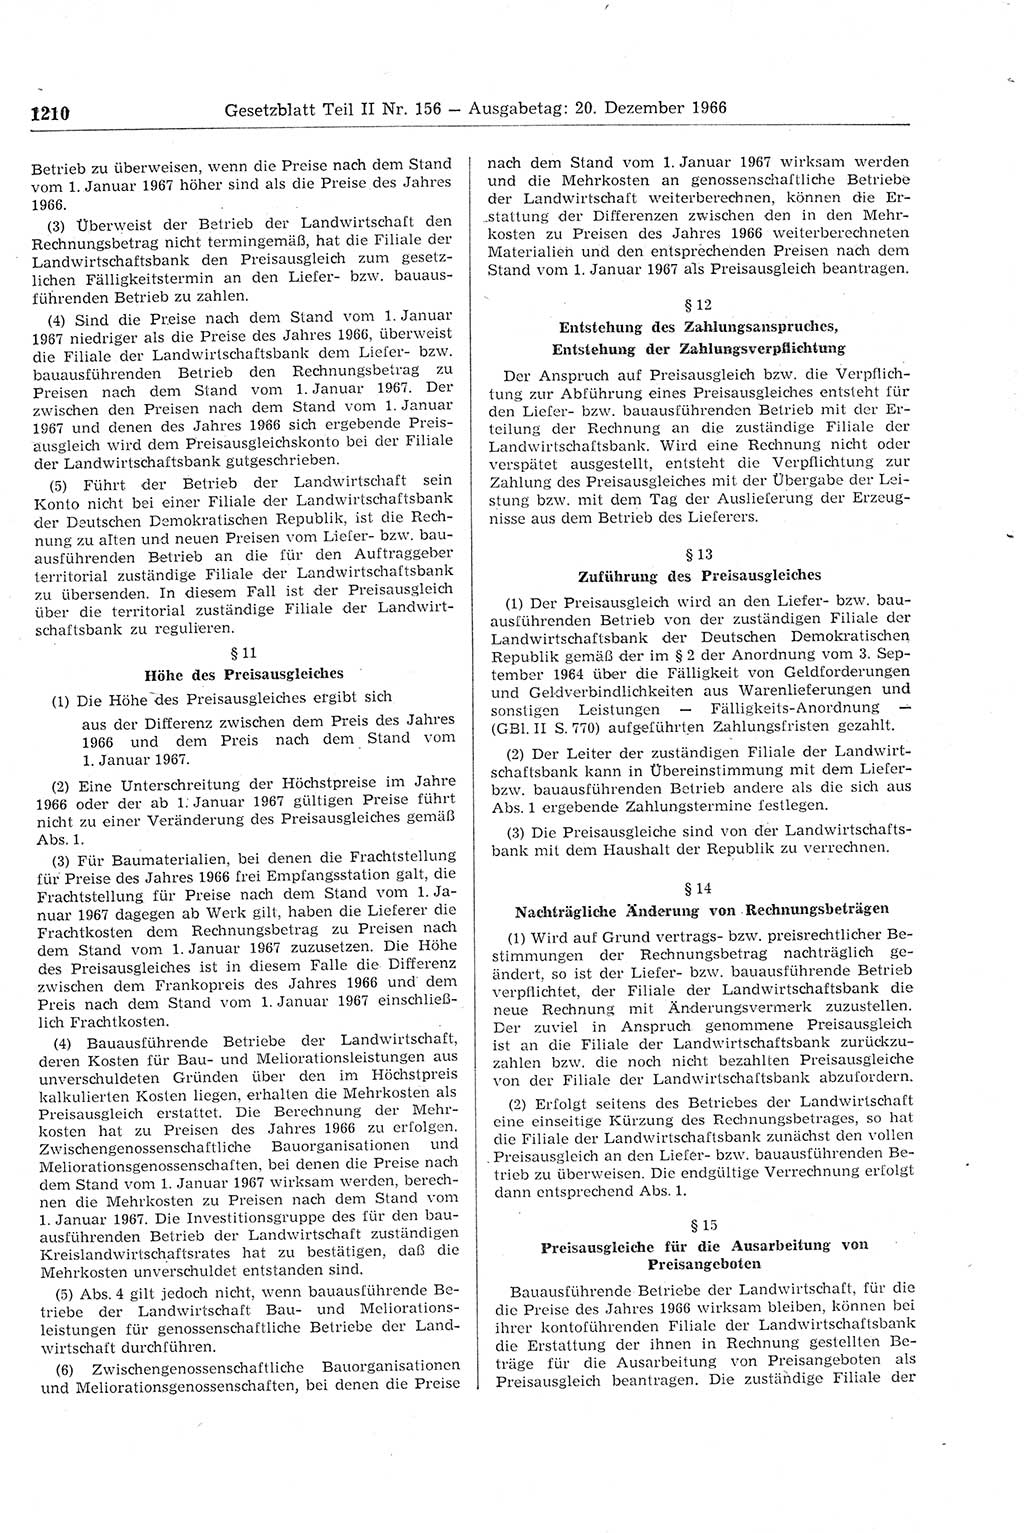 Gesetzblatt (GBl.) der Deutschen Demokratischen Republik (DDR) Teil ⅠⅠ 1966, Seite 1210 (GBl. DDR ⅠⅠ 1966, S. 1210)